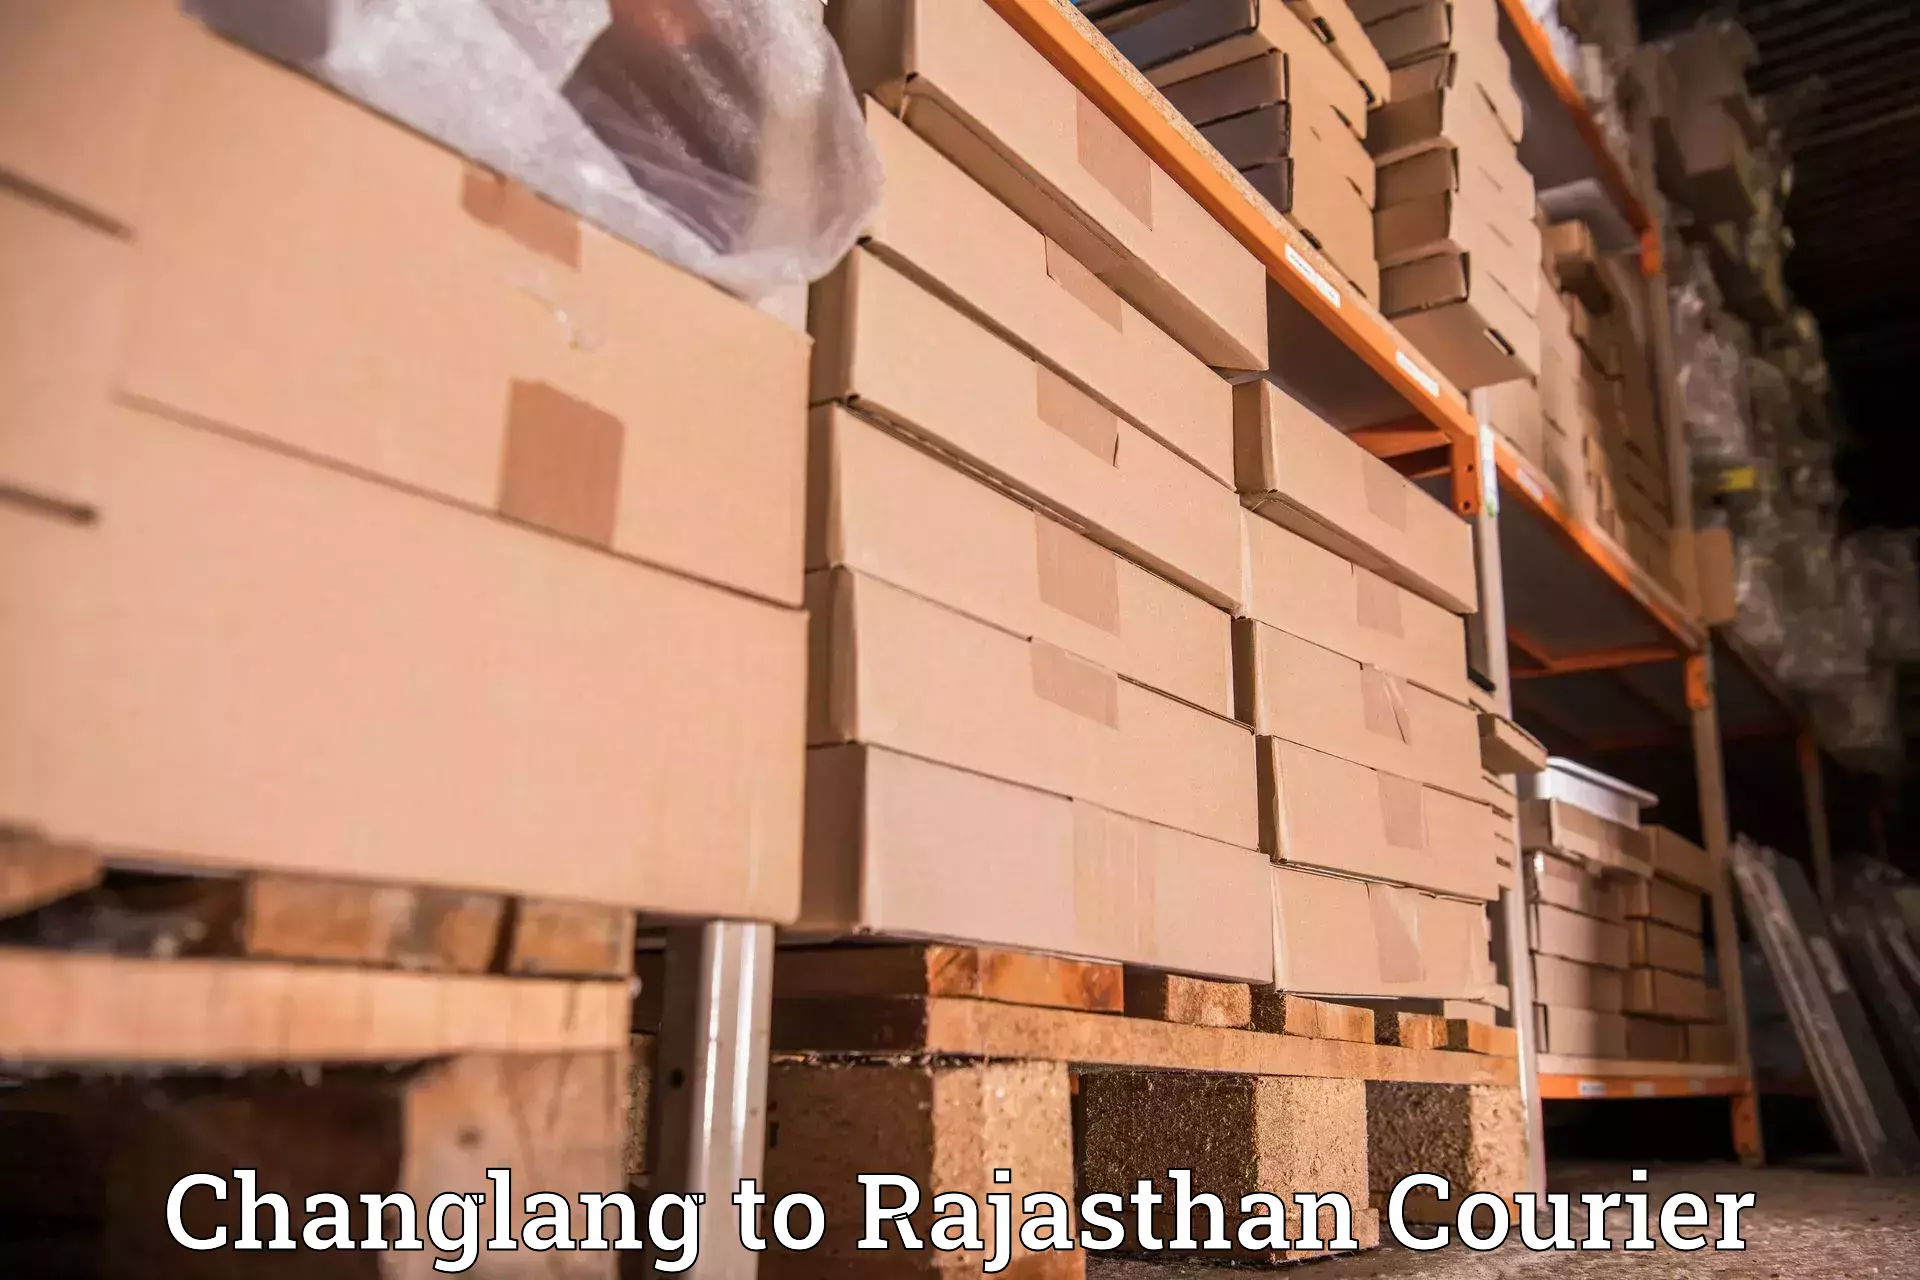 Global logistics network Changlang to Rajasthan